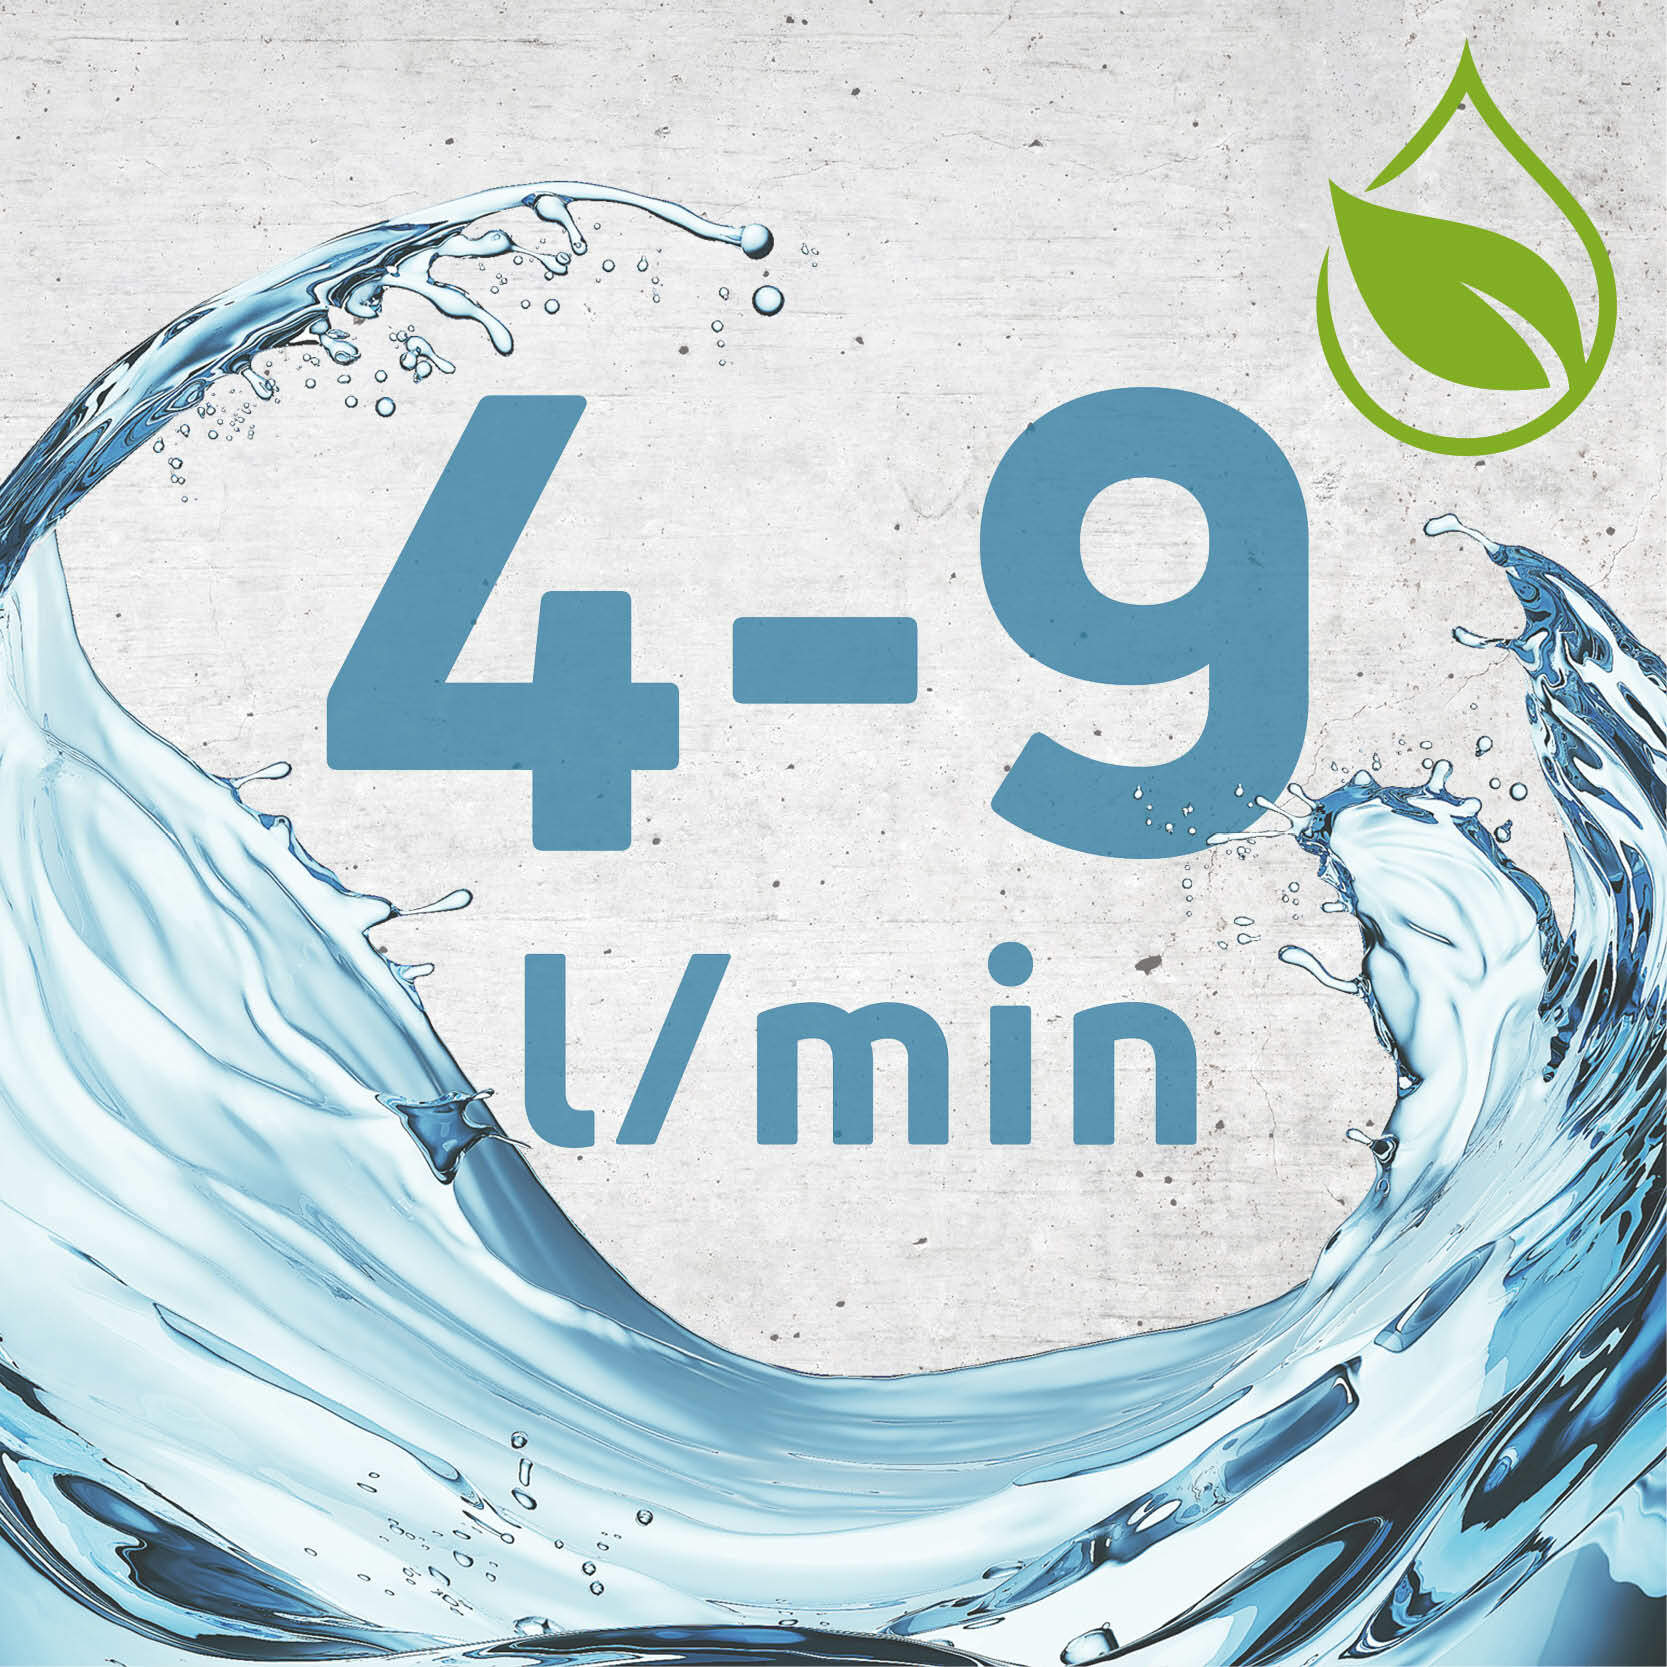 Klasa przepływu Z (4-9 l/min) pozwala na zredukowanie zużycia wody